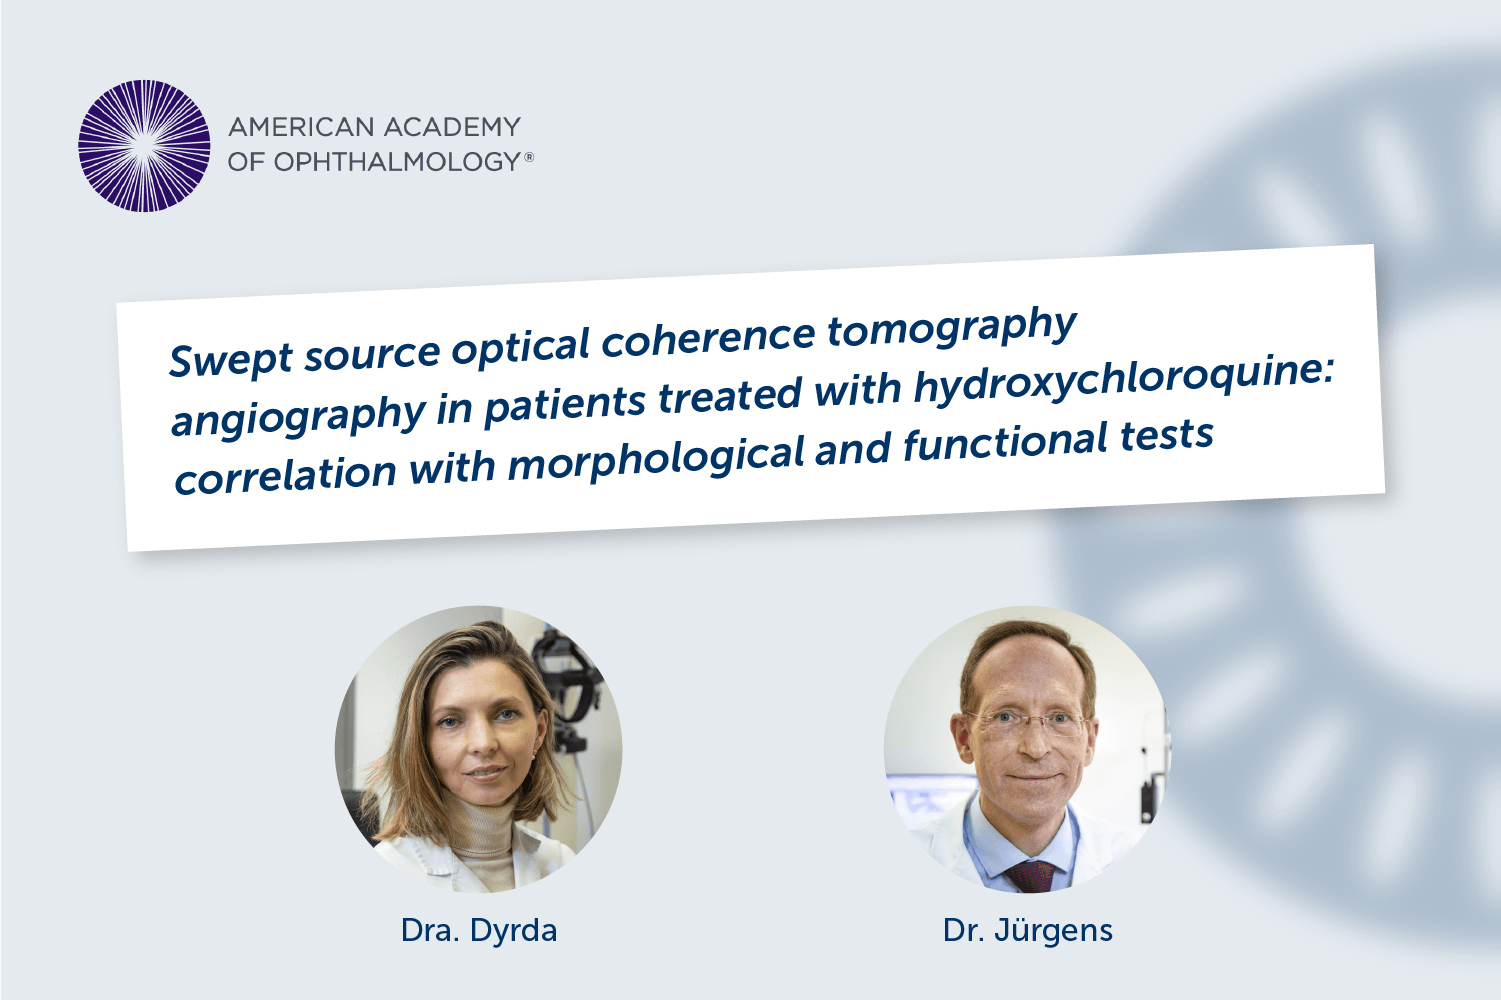 Un artículo en el que participaron la Dra. Dyrda y el Dr. Jürgens es destacado por la Academia Americana de Oftalmología